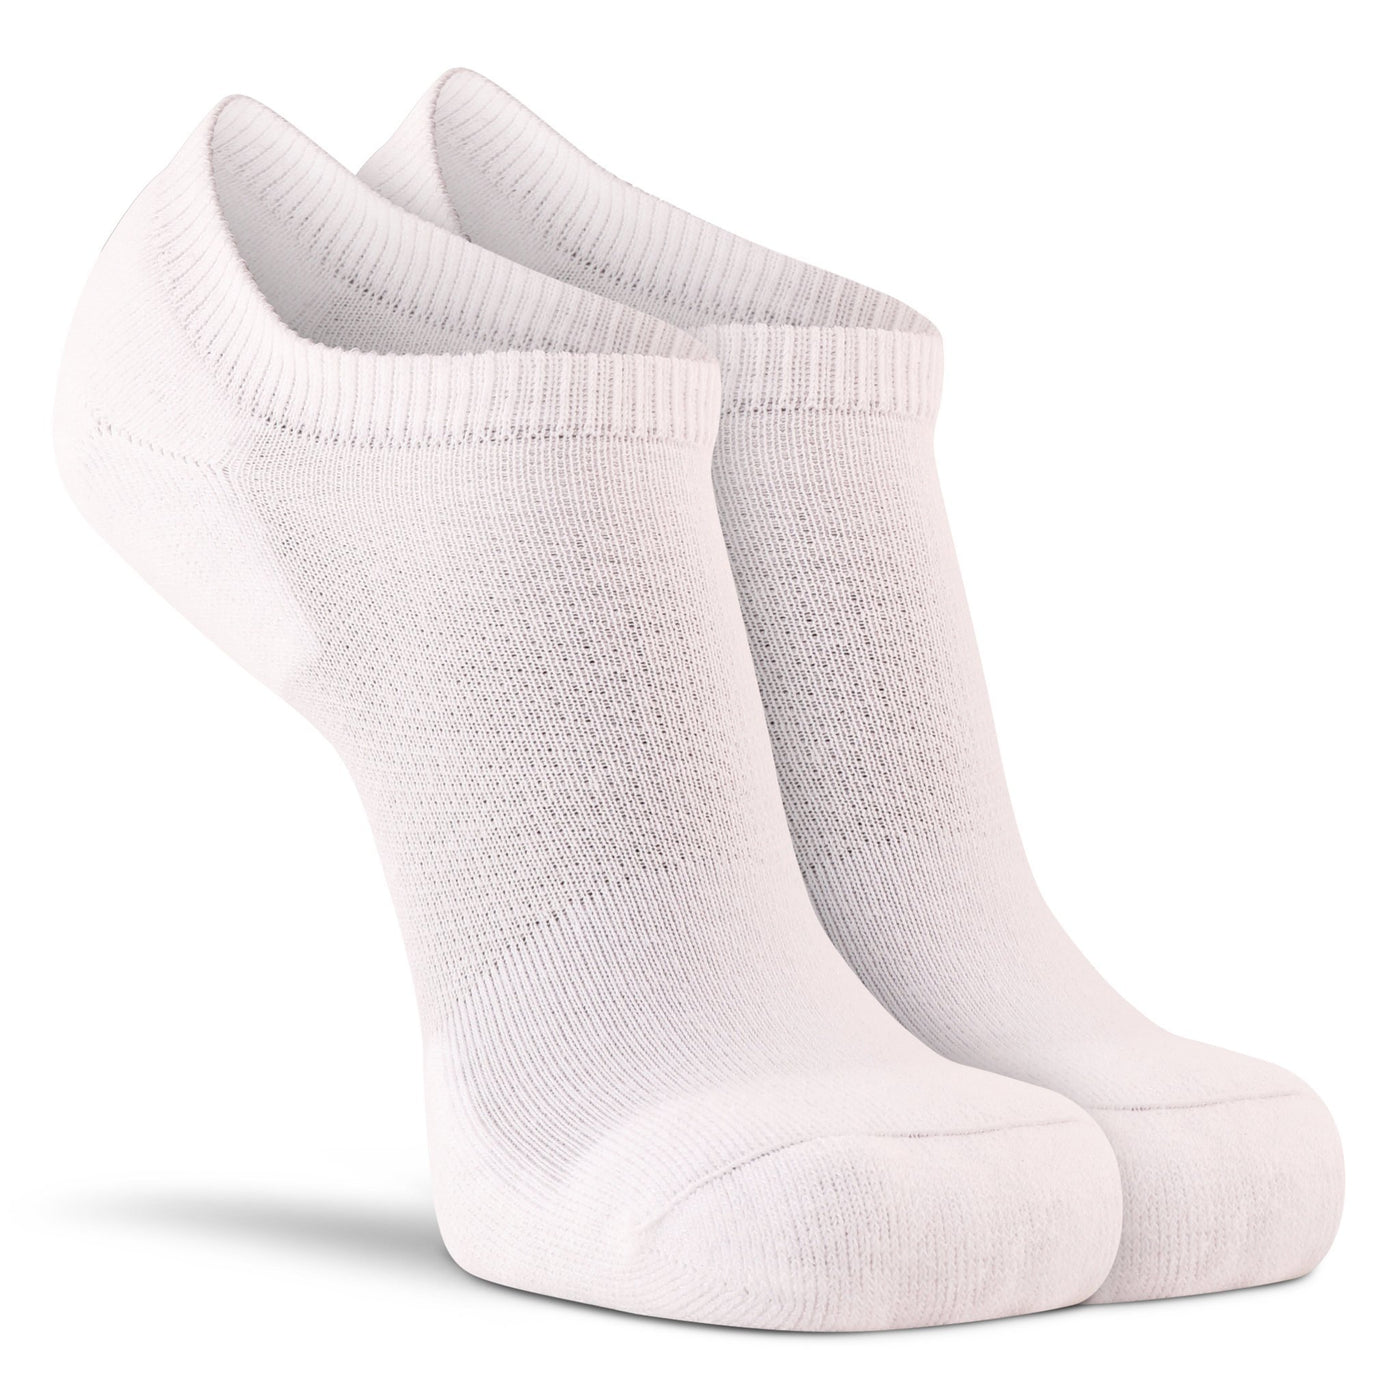 Her Diabetic Lightweight Ankle - 2 Pack White Medium - Fox River® Socks